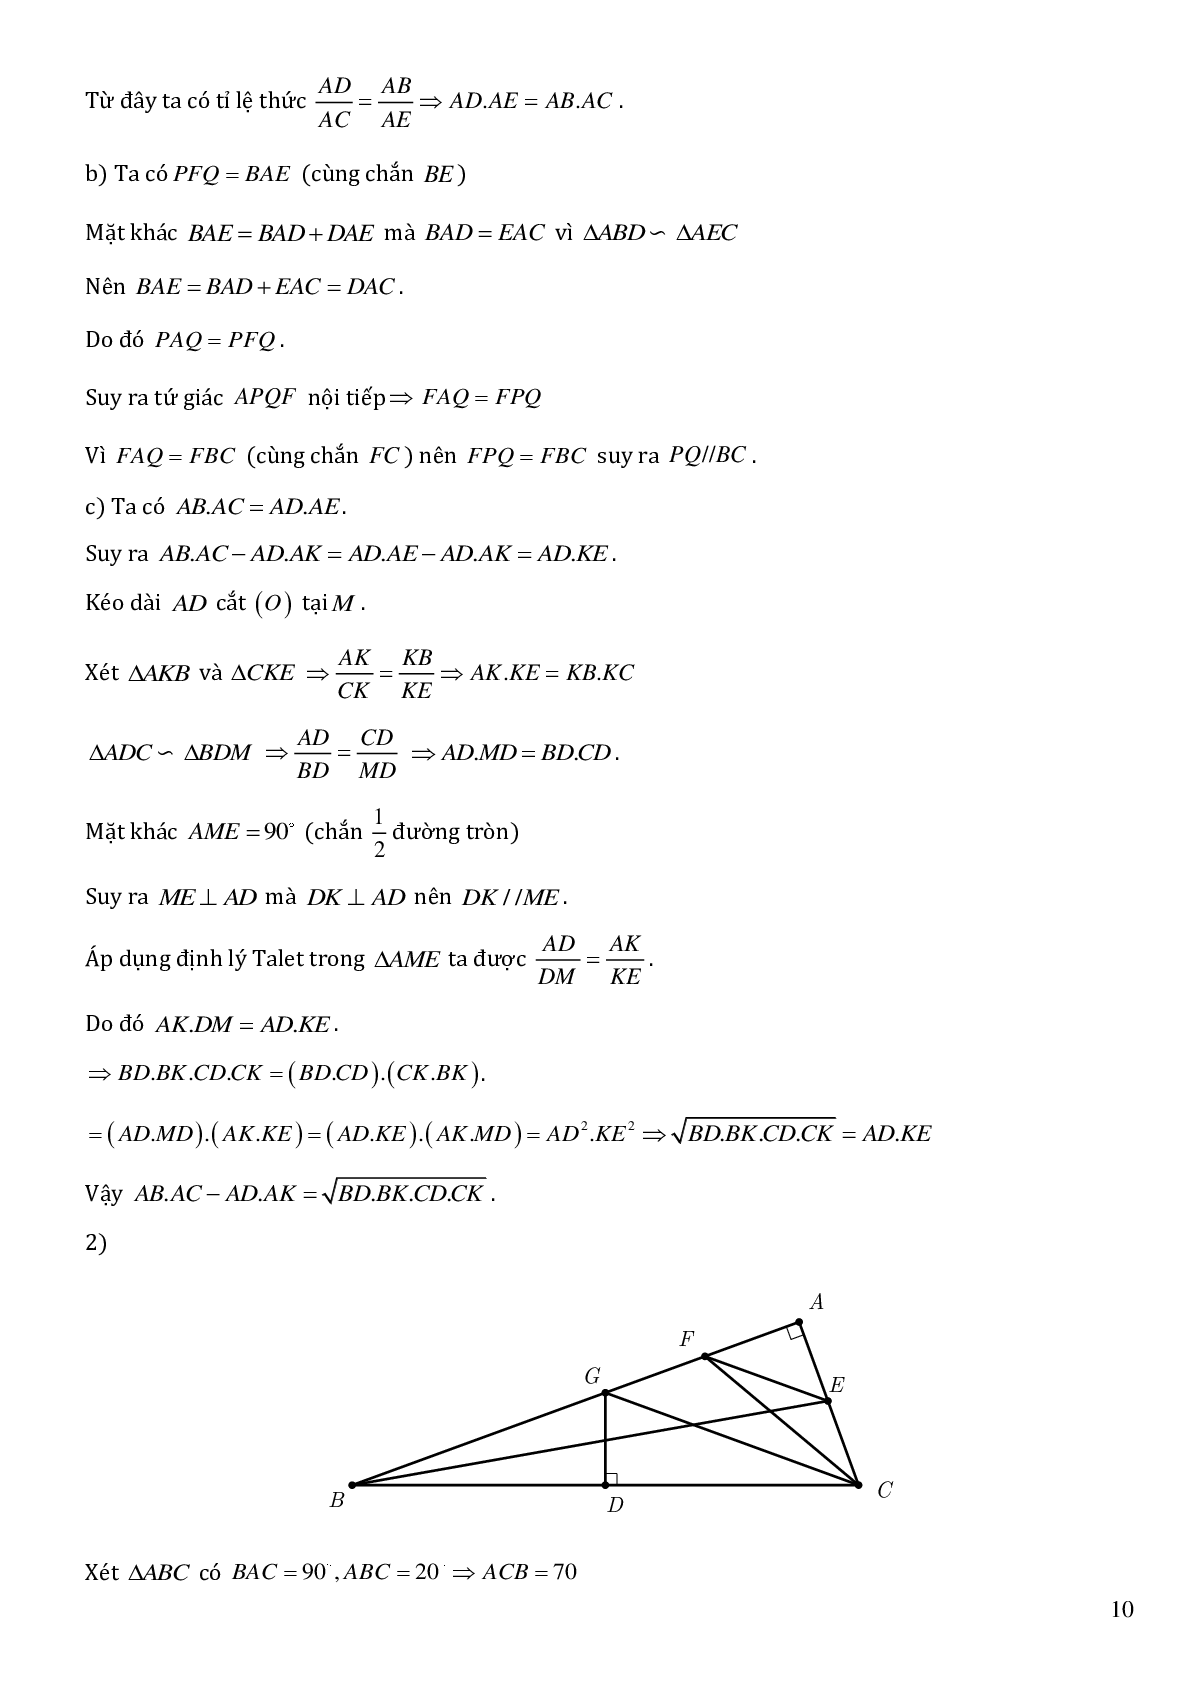 Các bài toán hình học trong đề thi học sinh giỏi toán lớp 9 (trang 10)